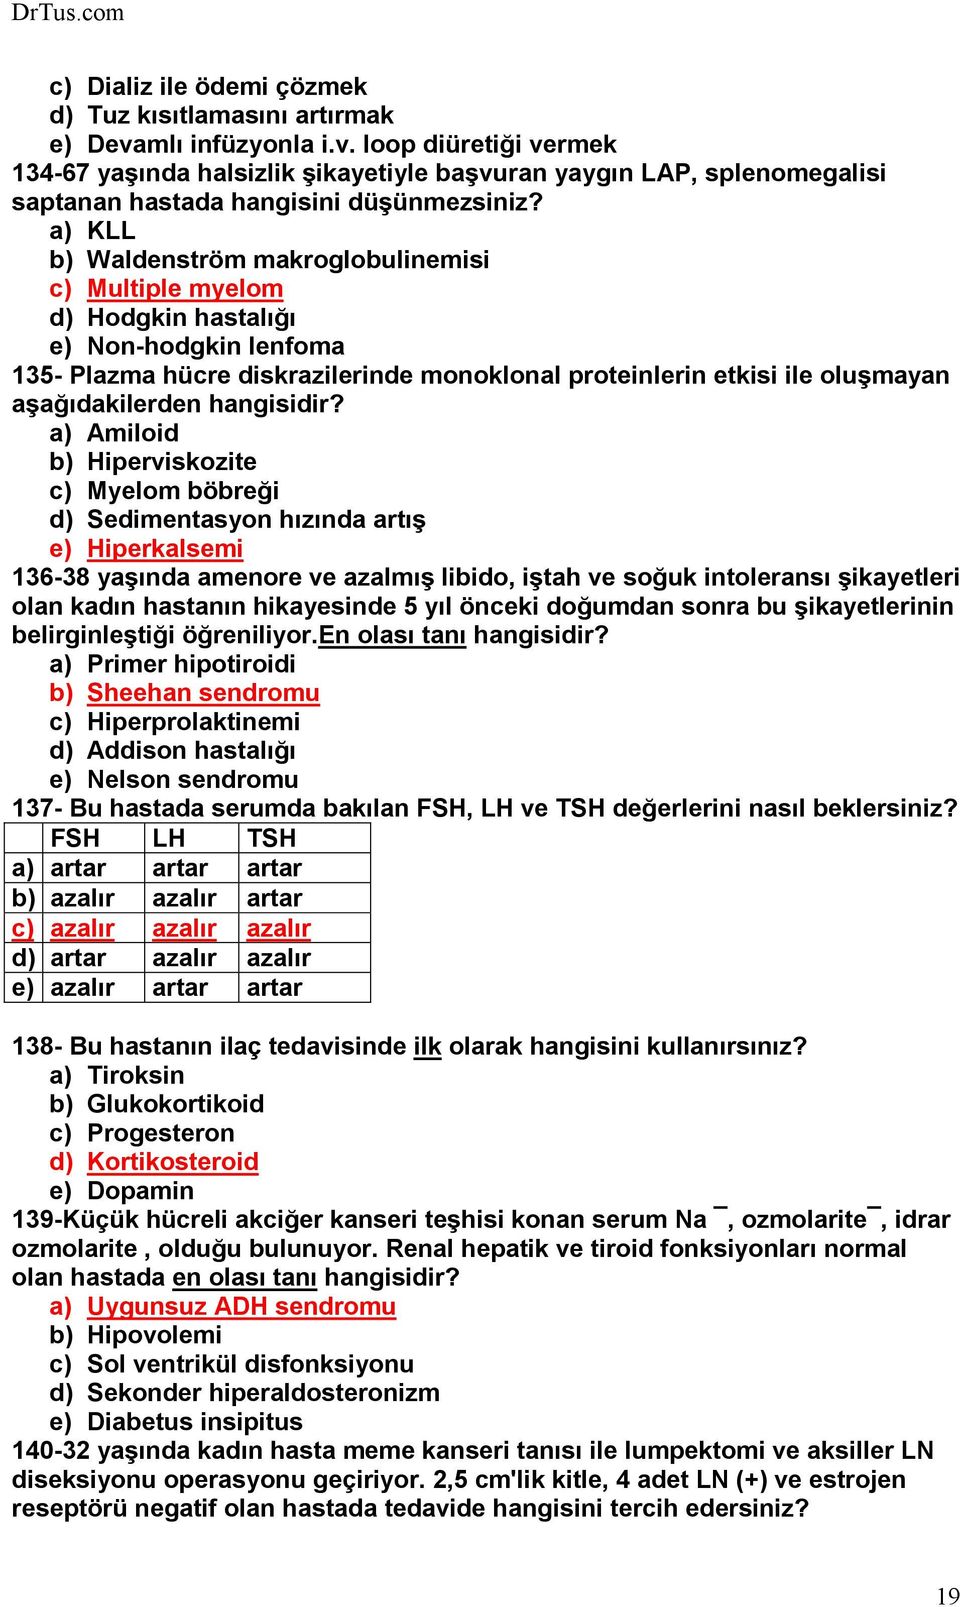 a) KLL b) Waldenström makroglobulinemisi c) Multiple myelom d) Hodgkin hastalığı e) Non-hodgkin lenfoma 135- Plazma hücre diskrazilerinde monoklonal proteinlerin etkisi ile oluşmayan aşağıdakilerden